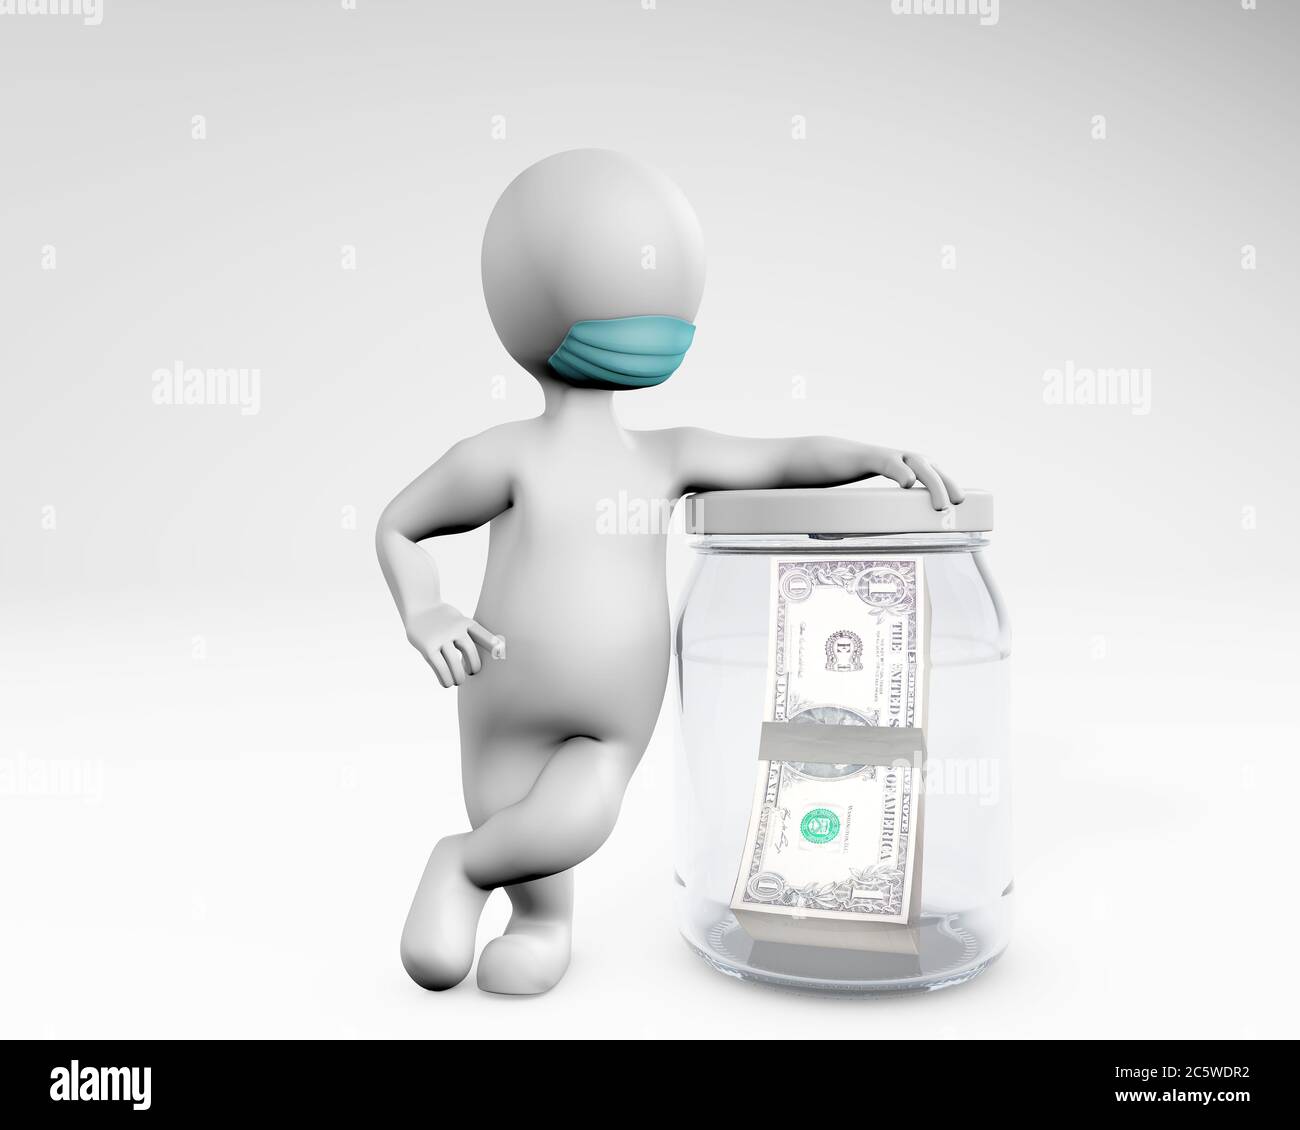 Uomo grasso con una maschera che consente di risparmiare denaro in un vaso 3d rendering isolato su bianco Foto Stock